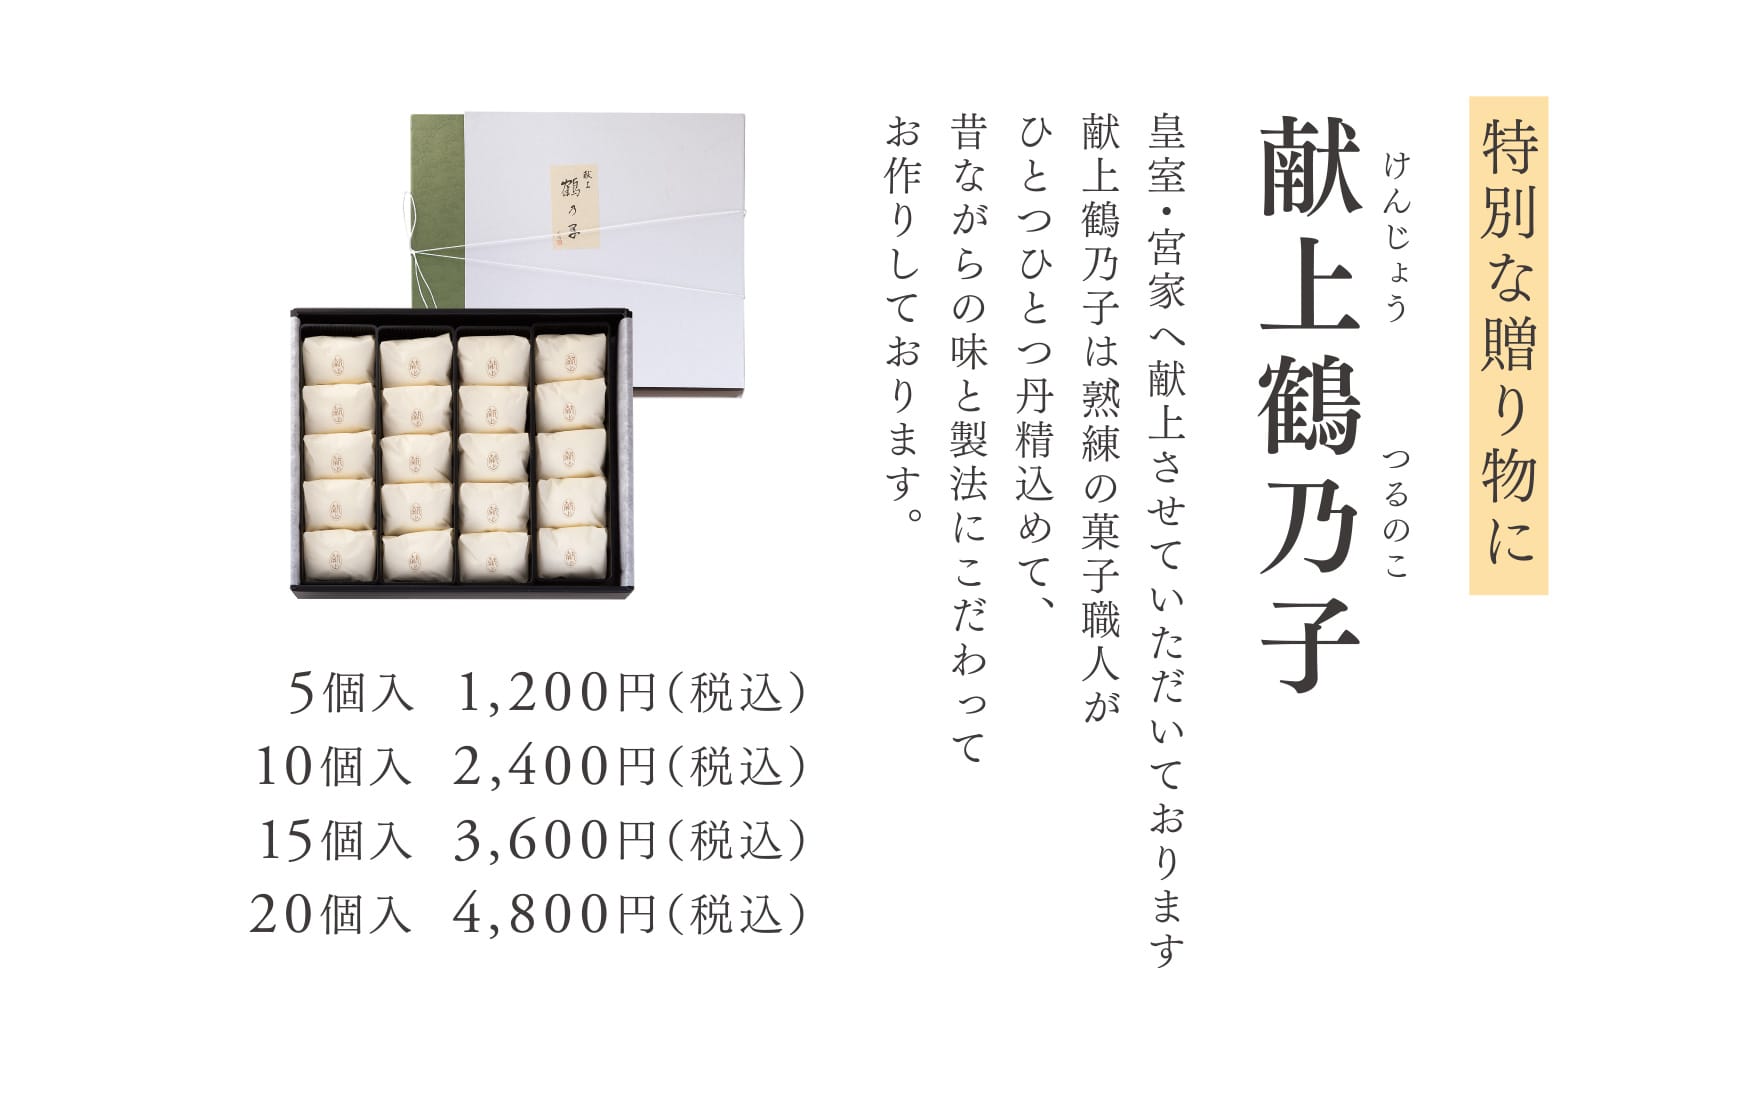 特別な贈り物に 献上鶴乃子 皇室・宮家へ献上させていただいております献上鶴乃子は、熟練の菓子職人がひとつひとつ丹精込めて、昔ながらの味と製法にこだわってお作りしております。